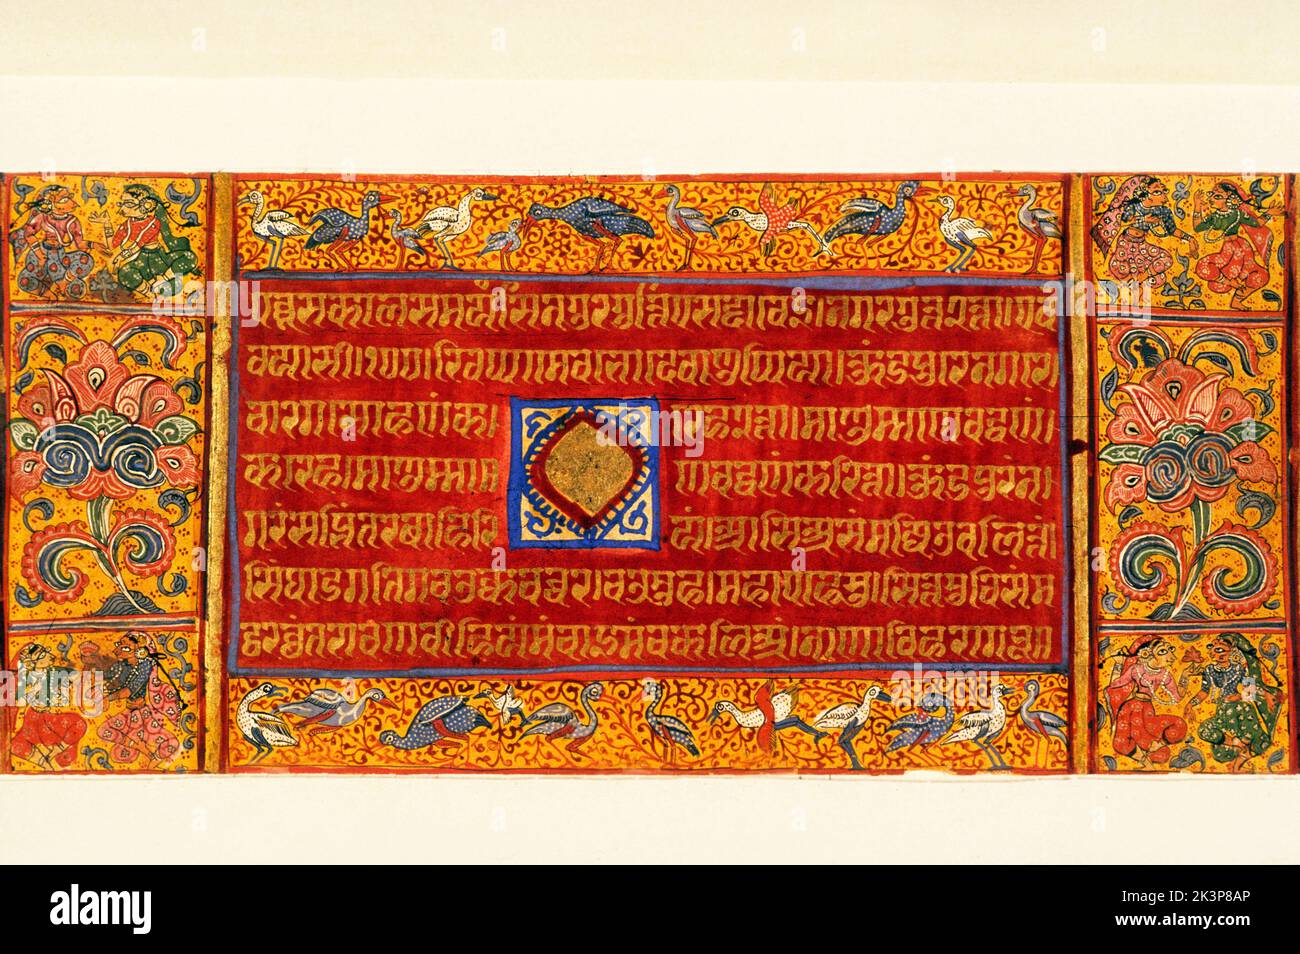 India: Jaina, 15 century, Devashanopado Kalpasutra page Stock Photo